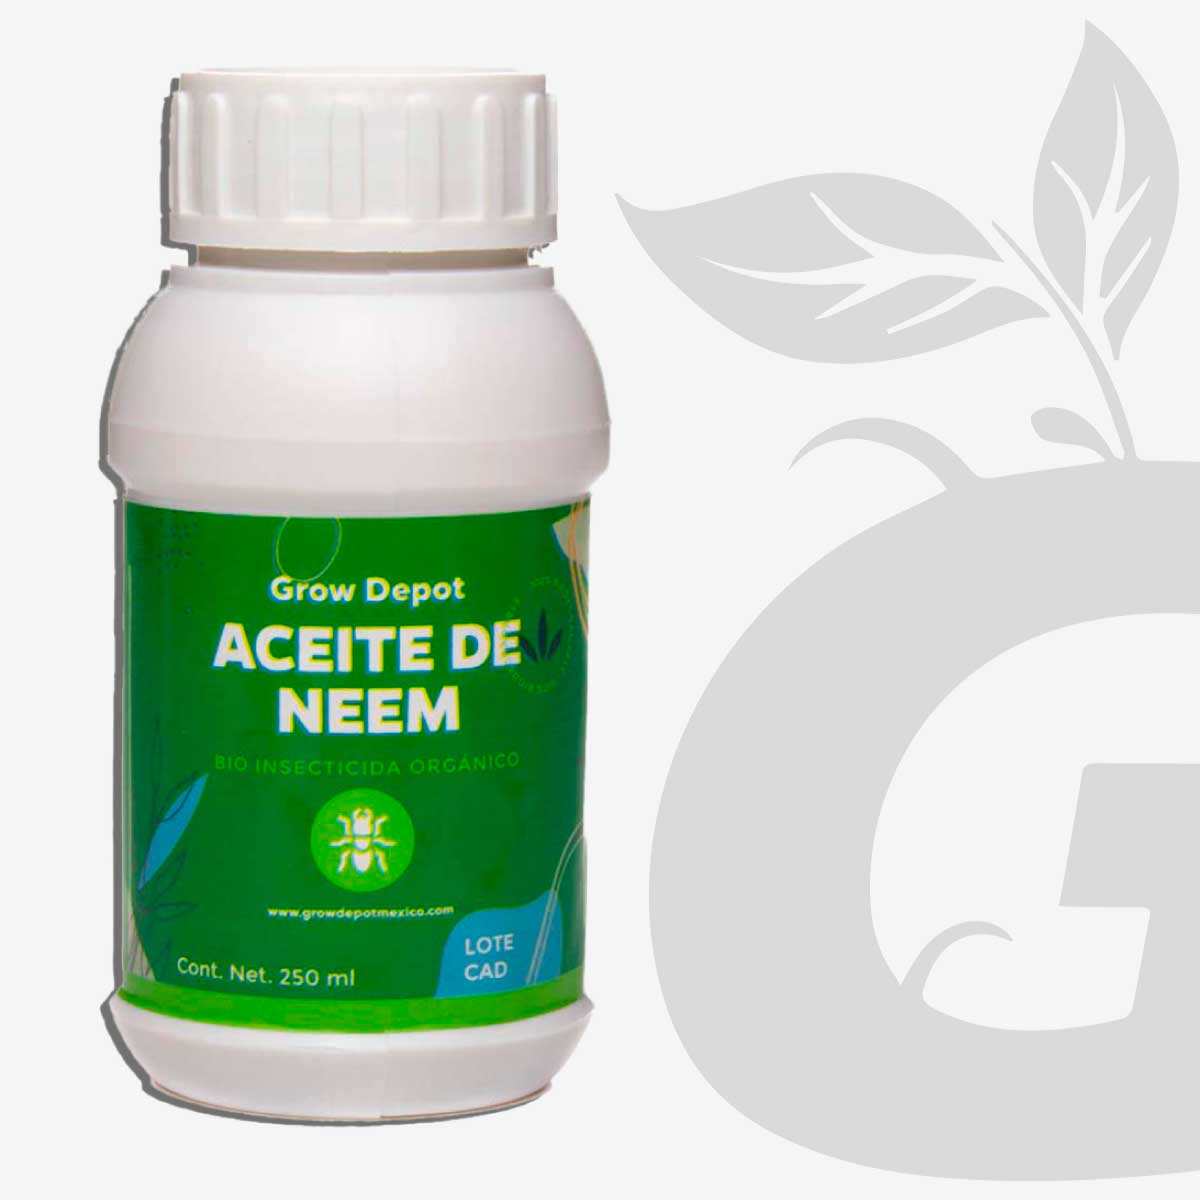 Aceite de Neem: Preventivo e Insecticida para Plantas